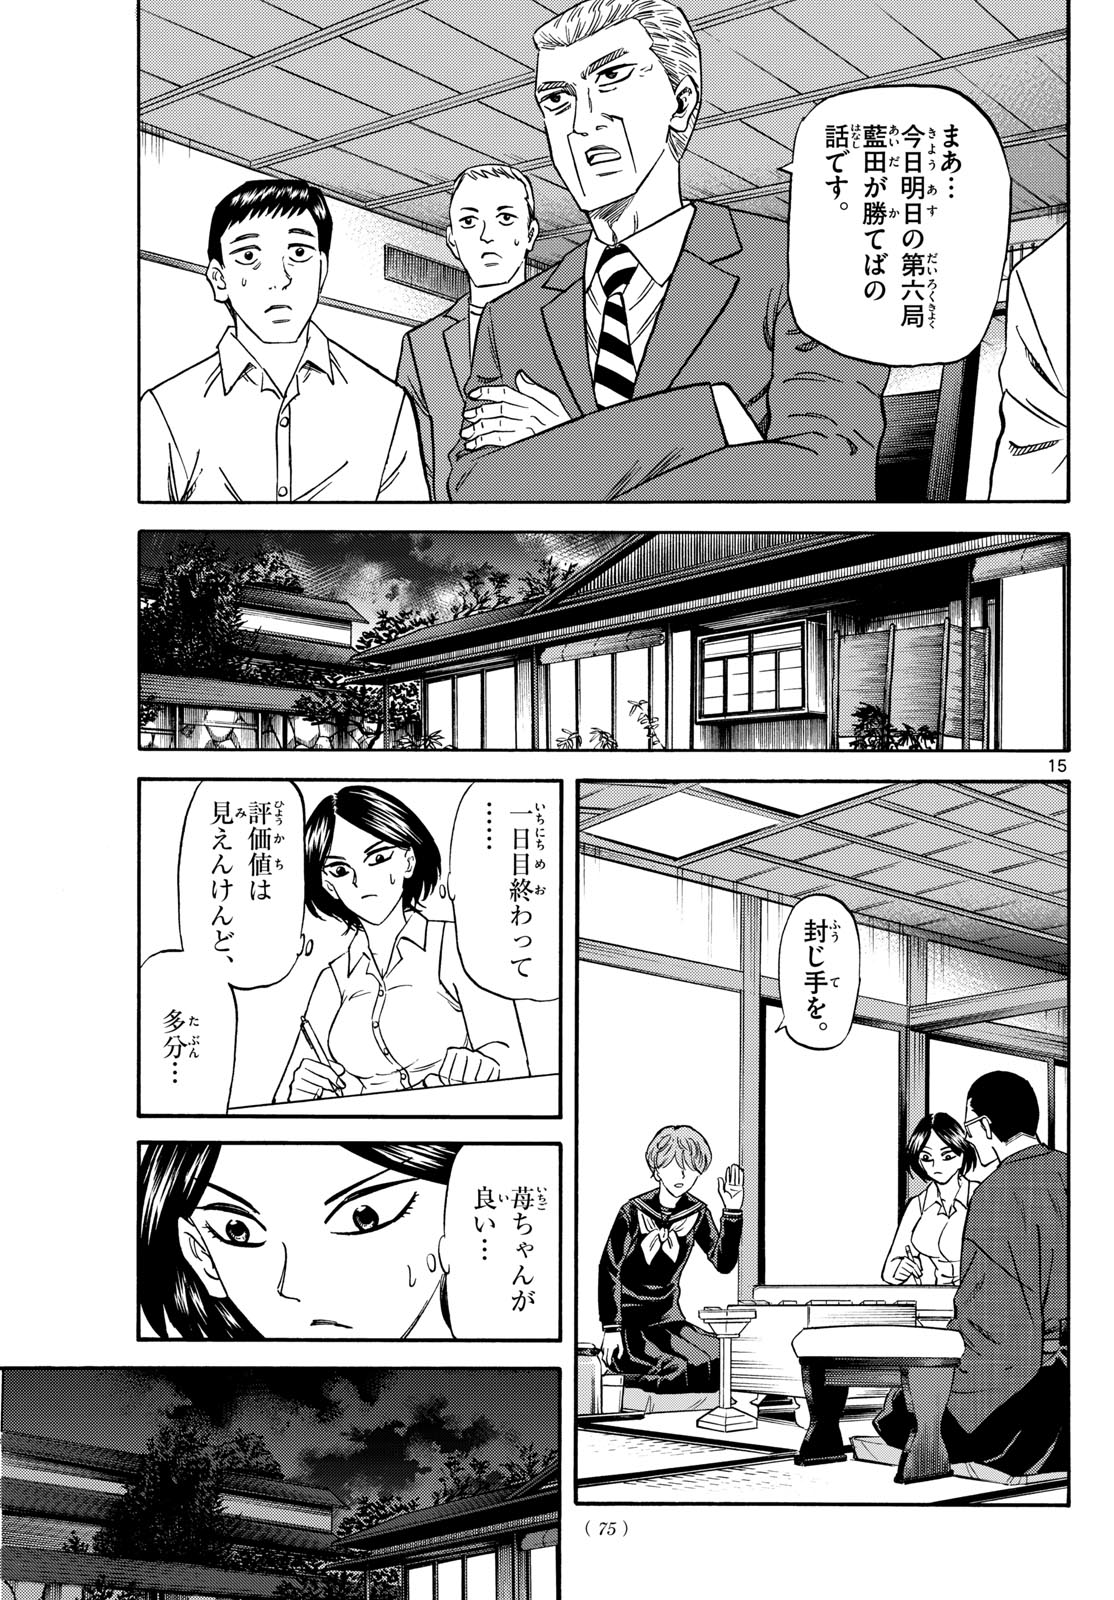 Tatsu to Ichigo - Chapter 169 - Page 15